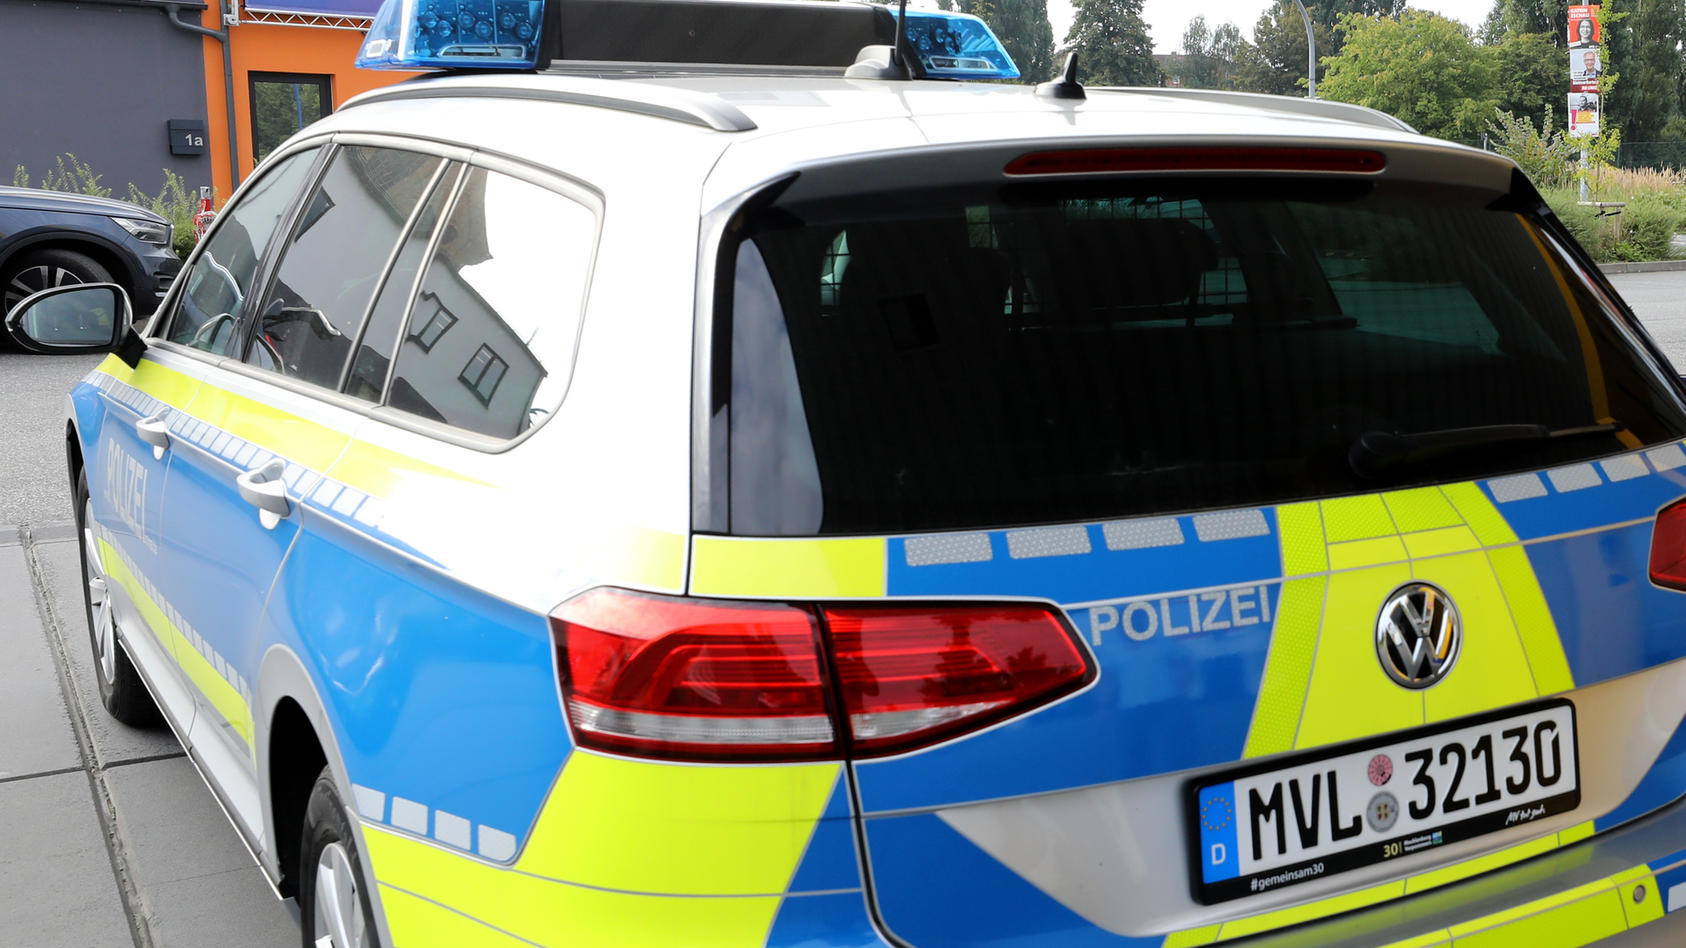 Ein Streifenwagen der Polizei steht nach dem Tanken an einer Tankstelle. Bei der Polizei in Mecklenburg-Vorpommern sind die Kraftstoffausgaben im ersten Halbjahr 2021 im Vergleich zum Vorjahreszeitraum um rund 15 Prozent auf 1,07 Millionen Euro gesti